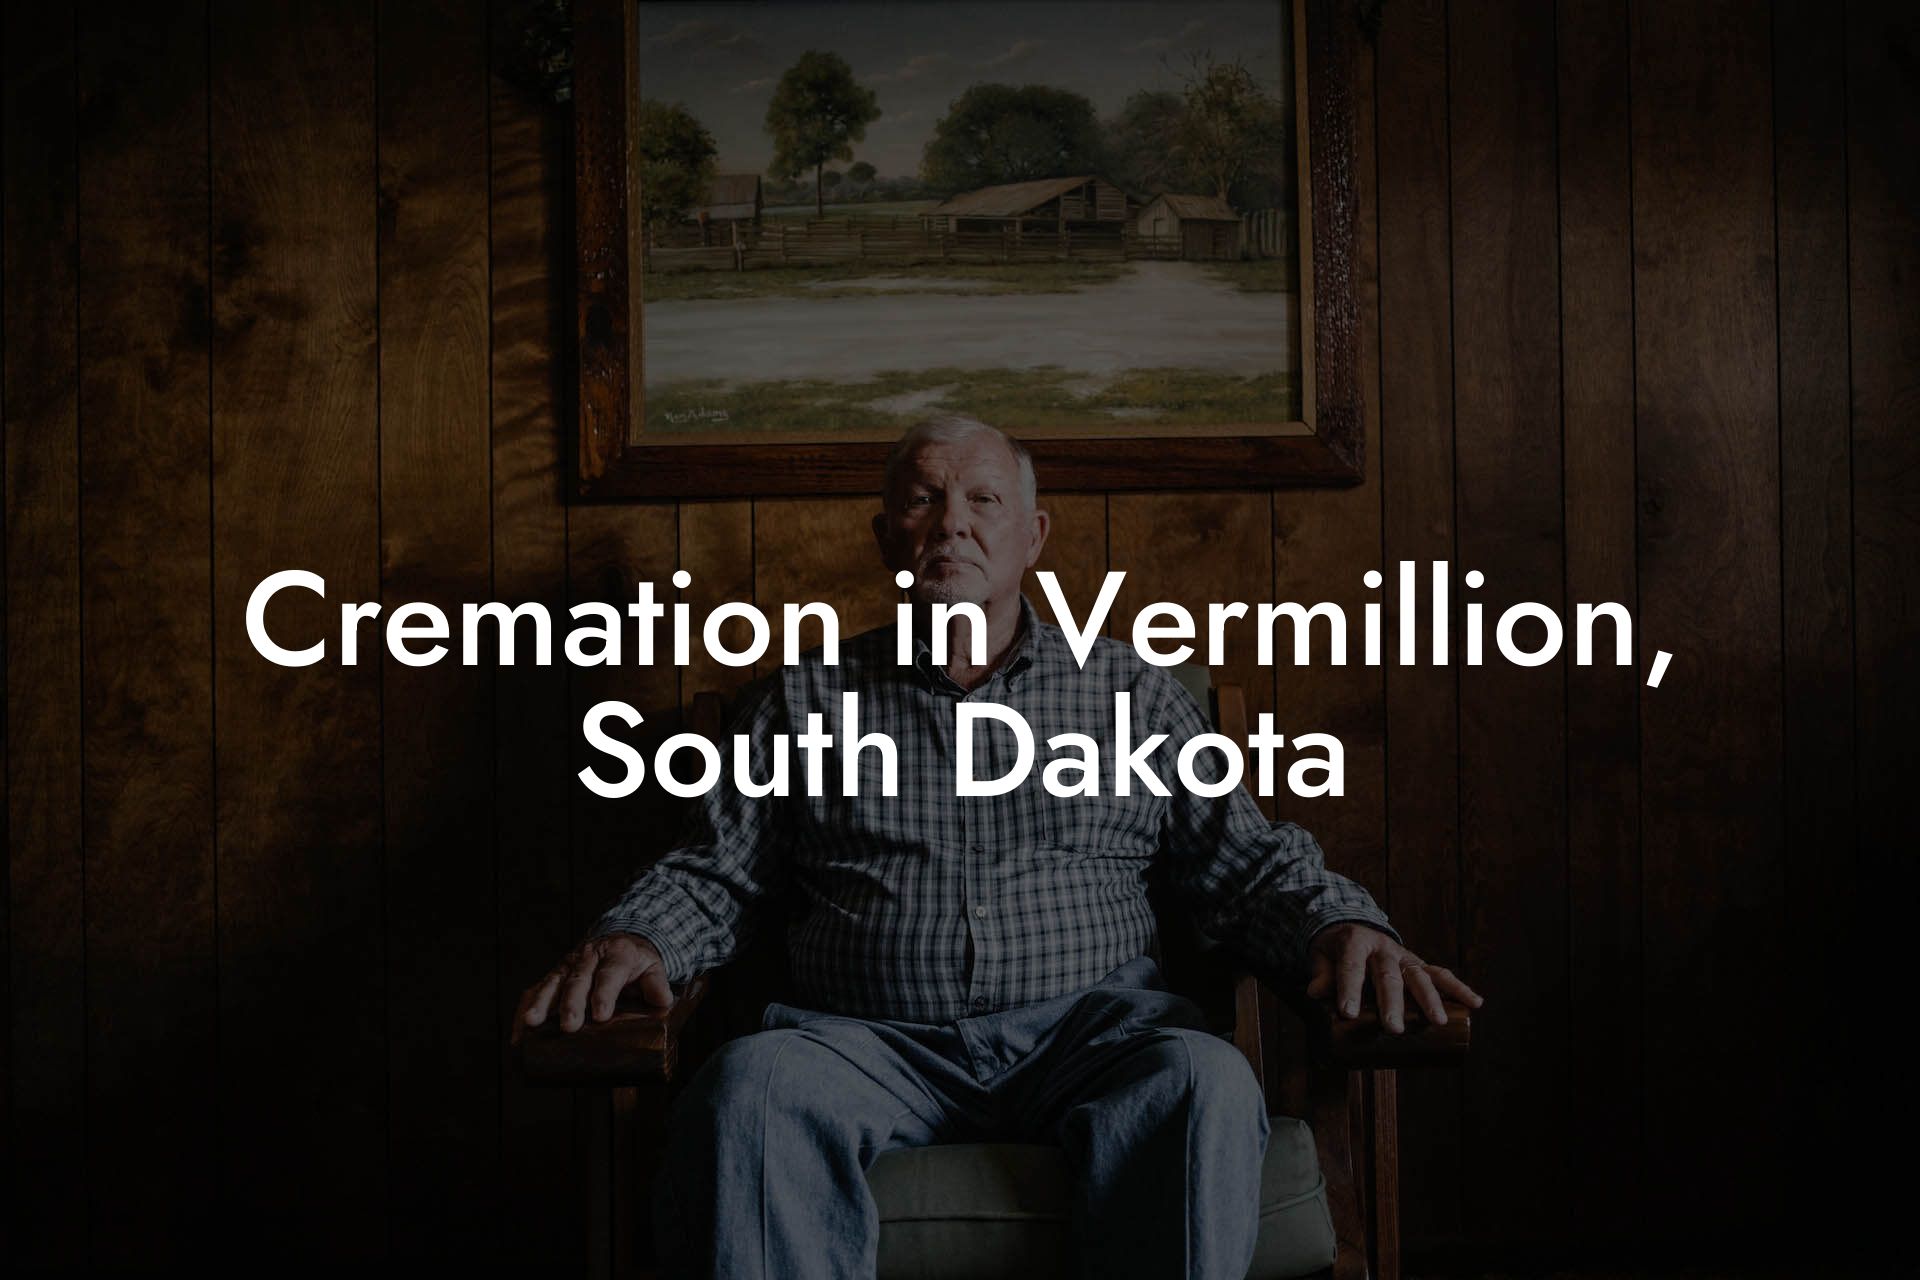 Cremation in Vermillion, South Dakota